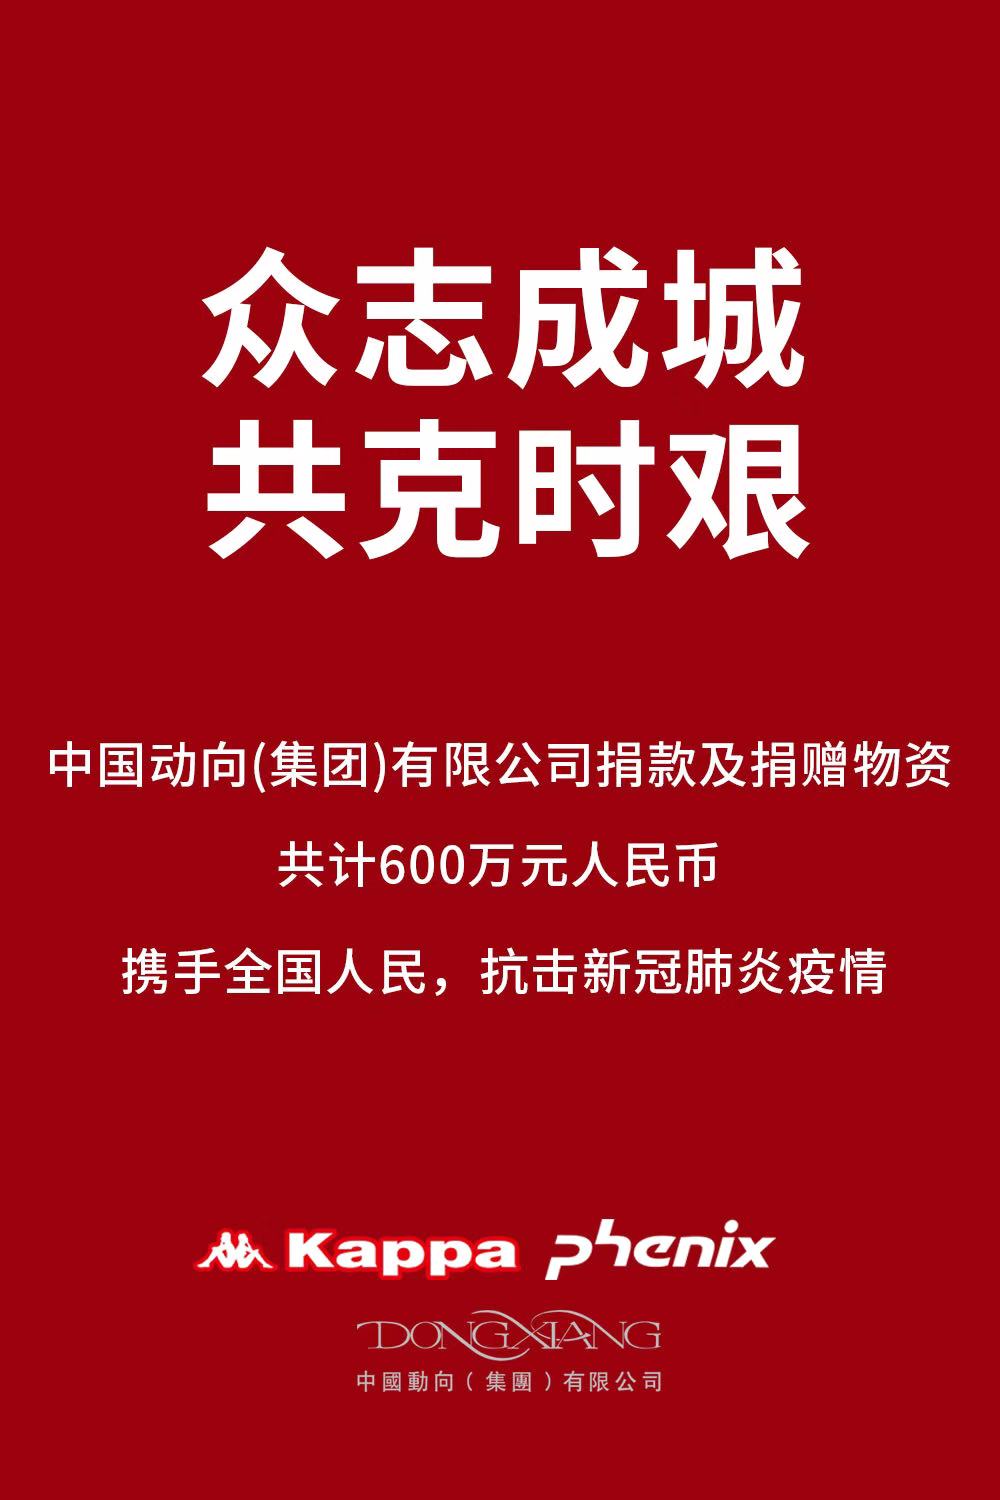 中国动向集团携旗下品牌Kappa、Phenix向中华慈善总会捐款人民币300万元 并同时设立300万元定向物资基金，驰援新型冠状病毒肺炎疫情防控